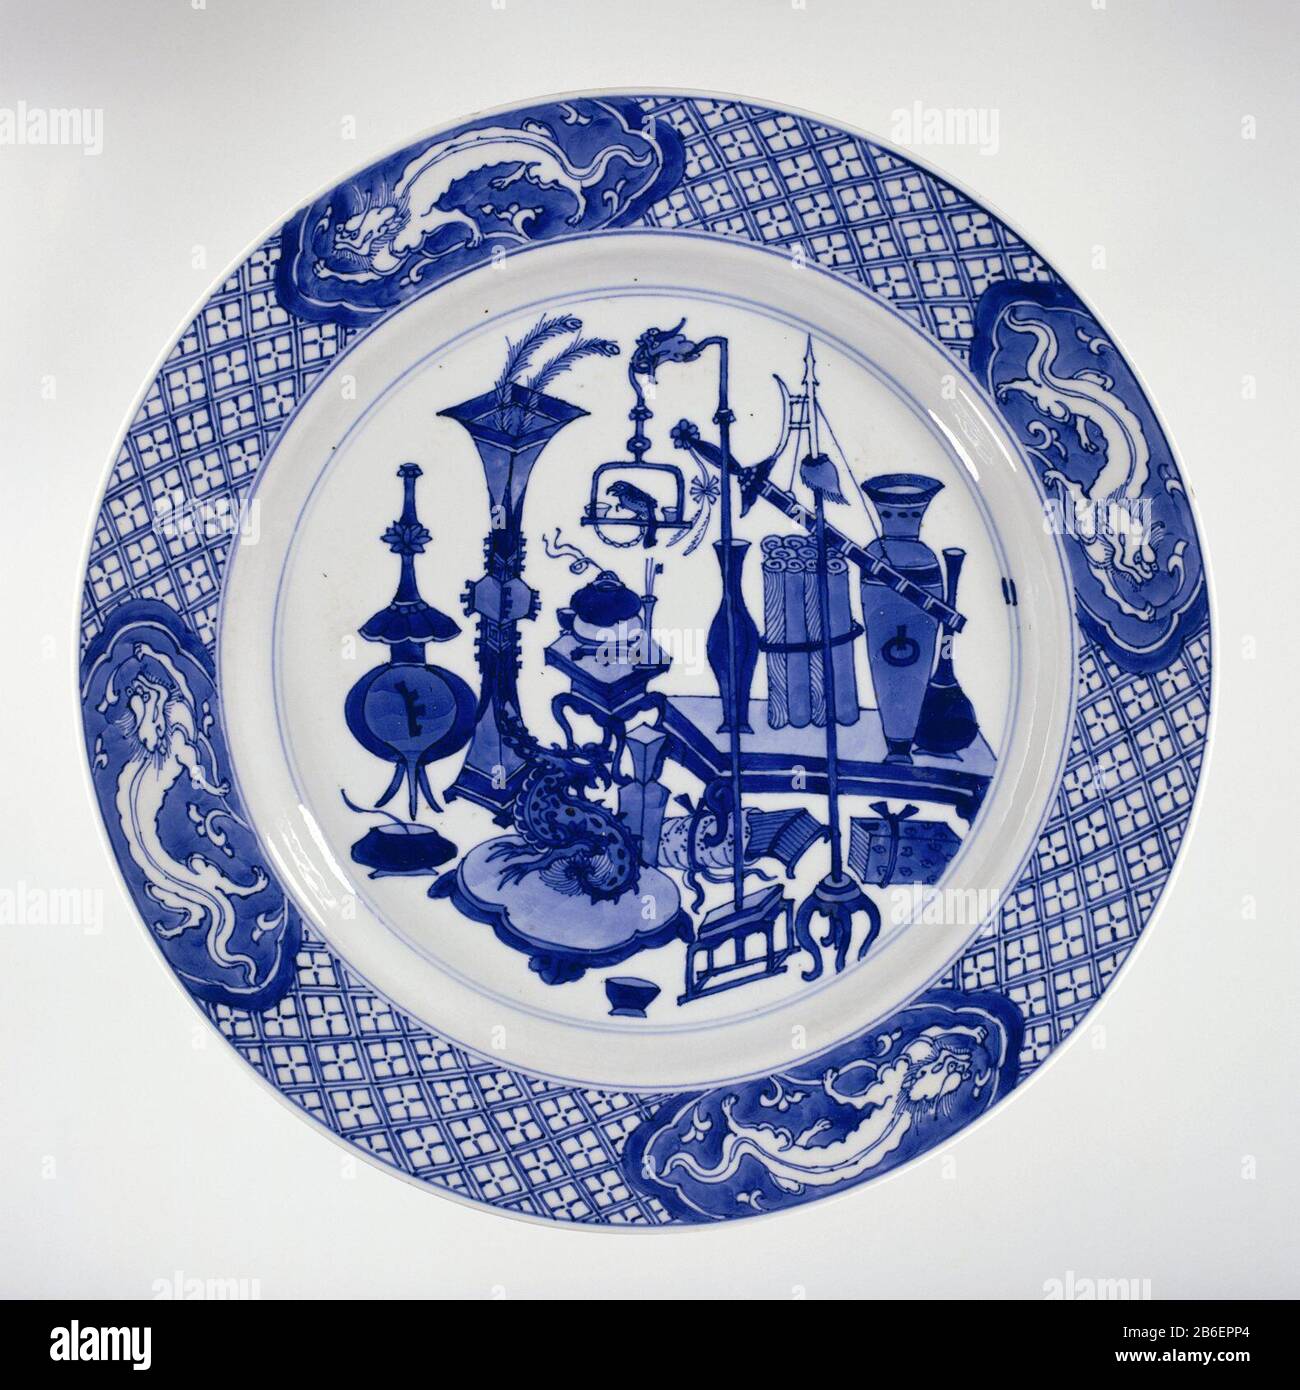 Plate with antiques and dragons Bord van porselein met opstaande wand en schuine rand, beschilderd in onderglazuur blauw. Op het plat antiquiteiten (vazen, pauwenveren, boeken, rollen, Wie: rrookbrander) en wonderlijke objecten